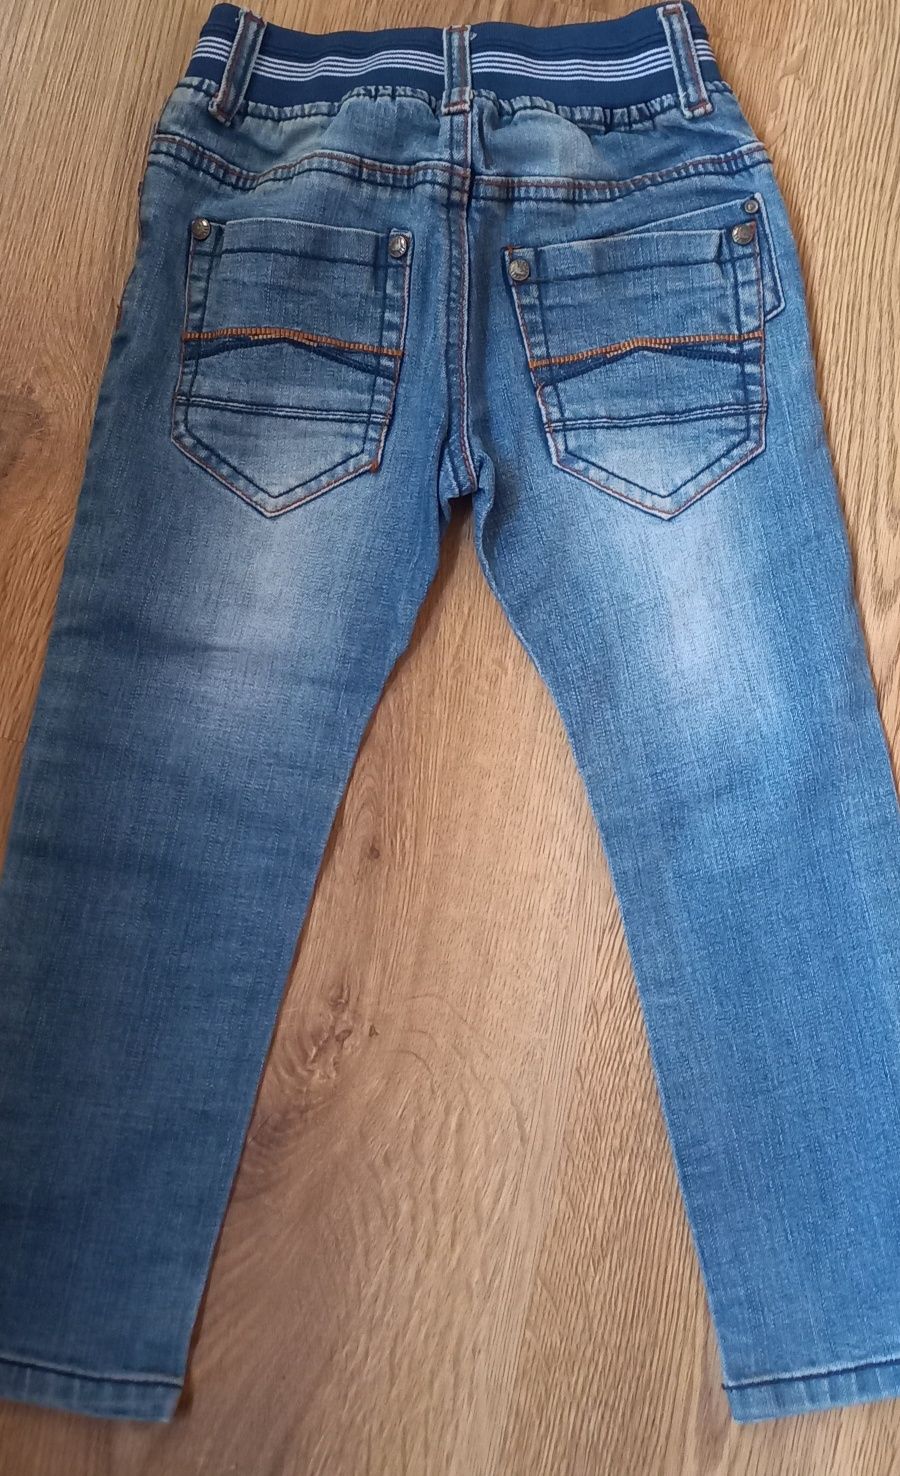 Фірмові круті джинси, ідеальний стан, 104 розмір